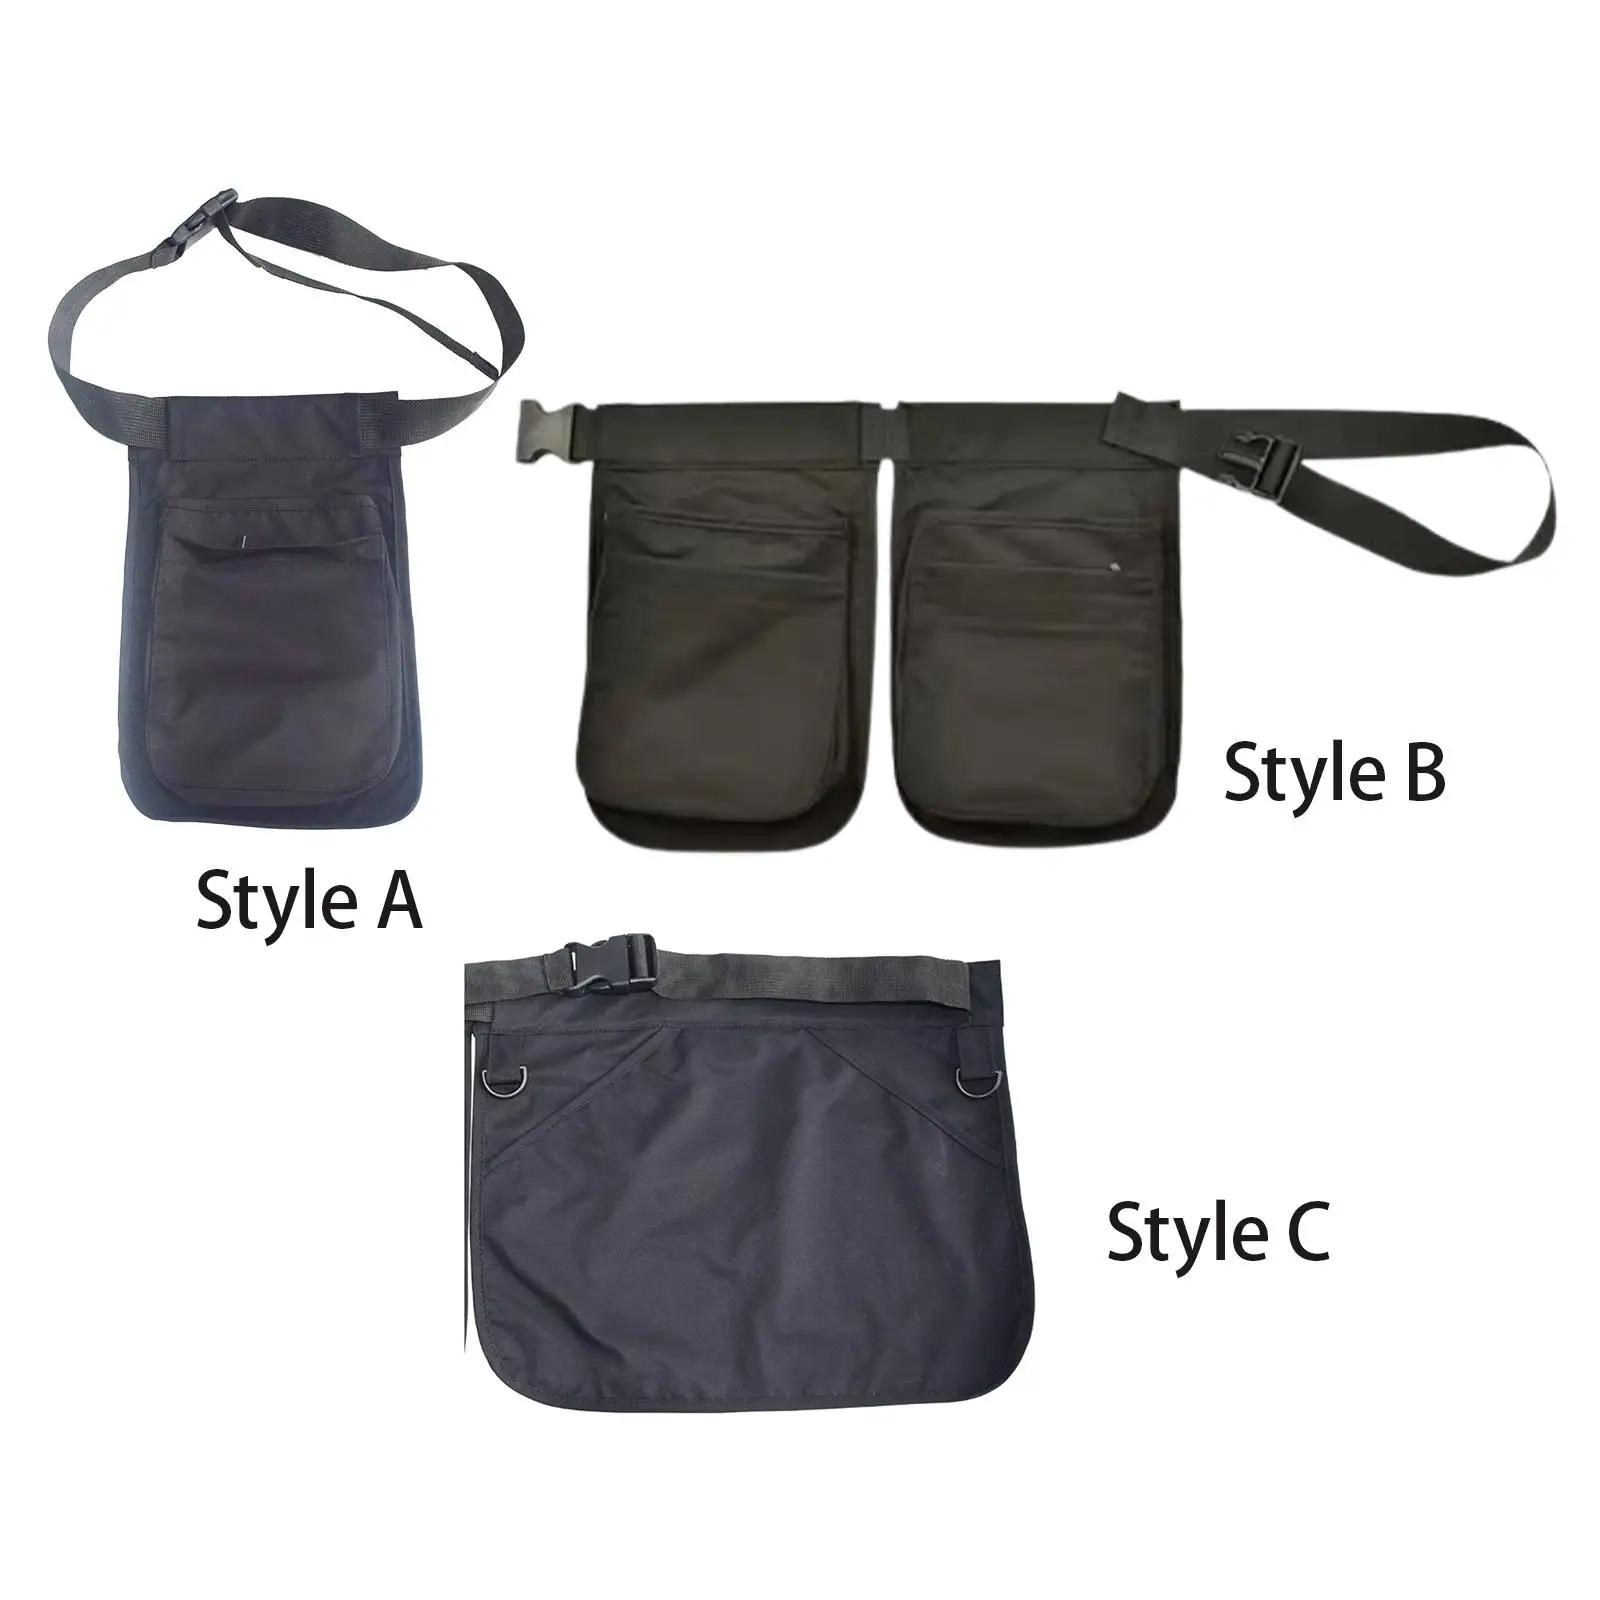 

Waist Bag Multi Pockets Black Fanny Pack Lightweight Waitress Work Waist Apron for Running Workout Hiking Dog Walking Activities